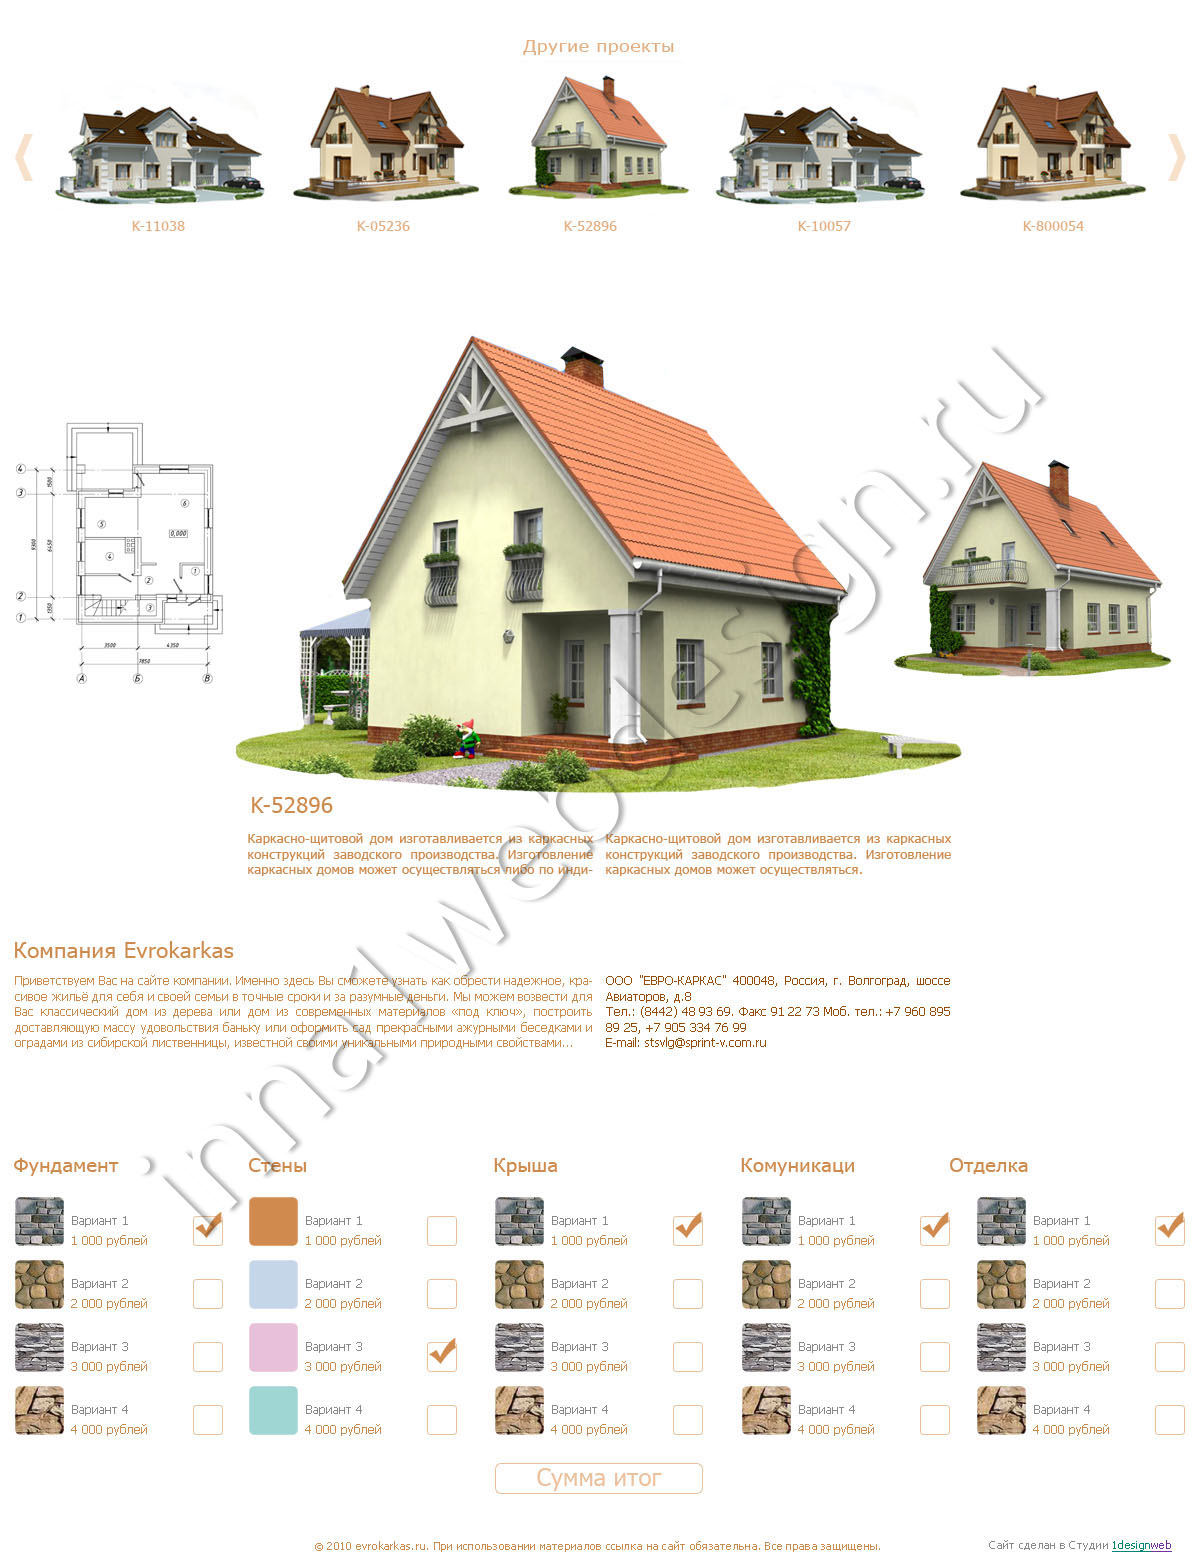 Дизайн сайта для загородных домов